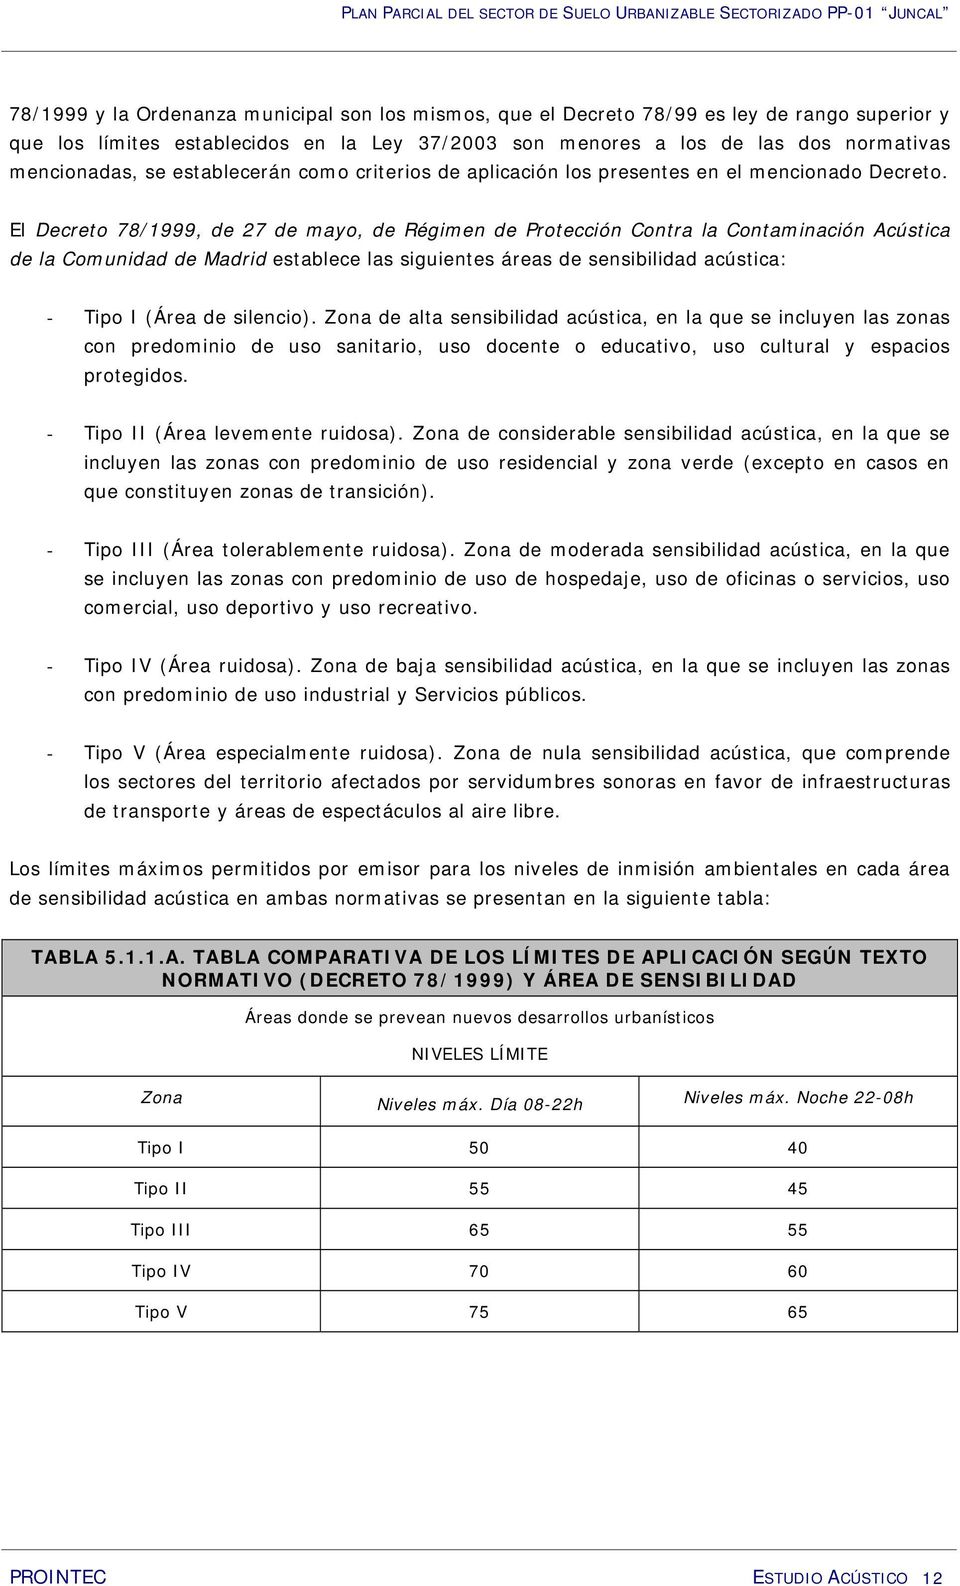 El Decreto 78/1999, de 27 de mayo, de Régimen de Protección Contra la Contaminación Acústica de la Comunidad de Madrid establece las siguientes áreas de sensibilidad acústica: - Tipo I (Área de